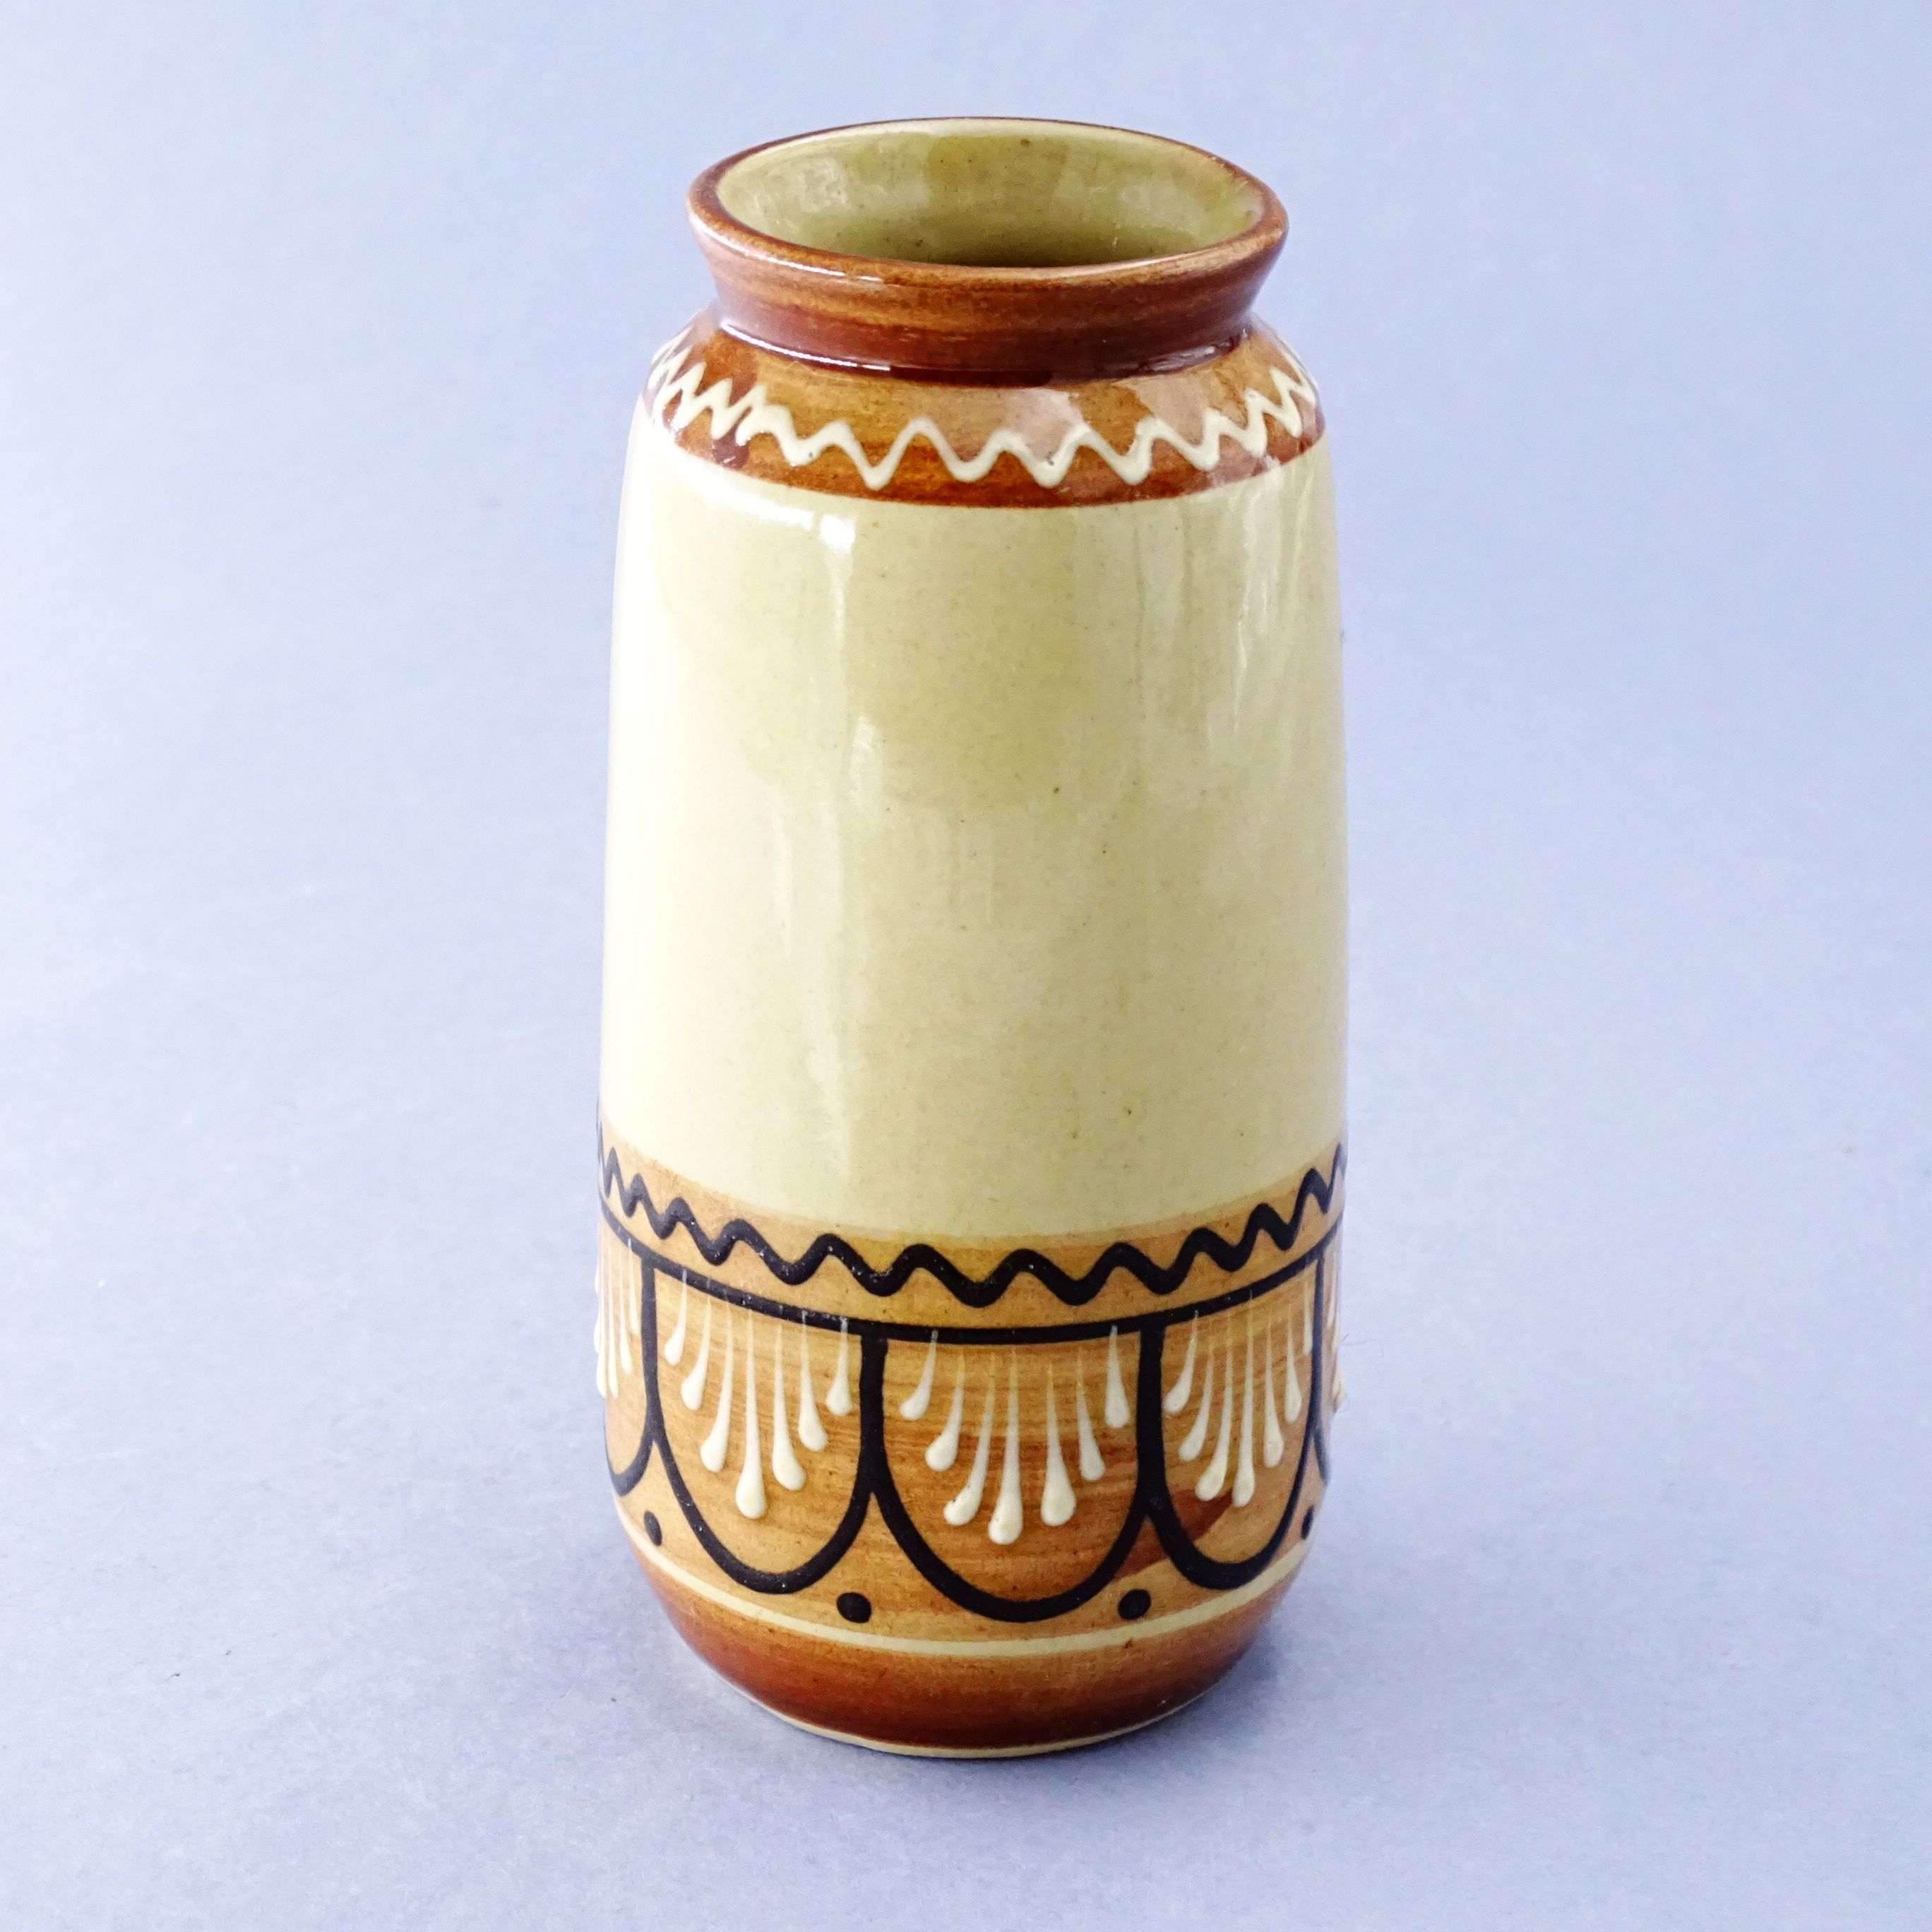 łużyce stary recznie malowany wazon wazonik ceramiczny